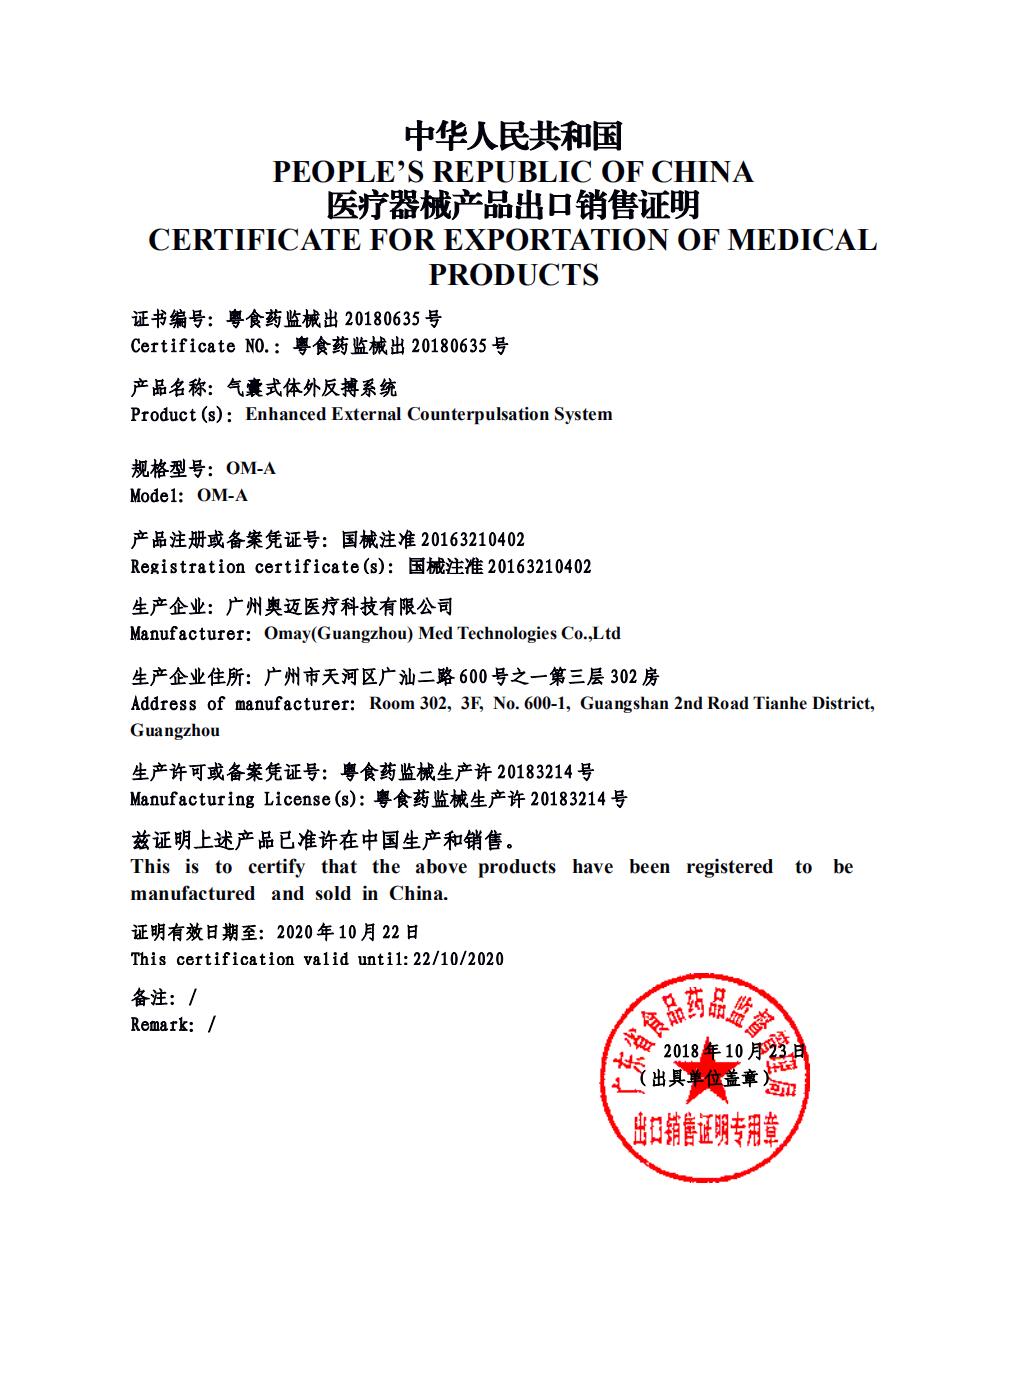 EECP CFS certificate